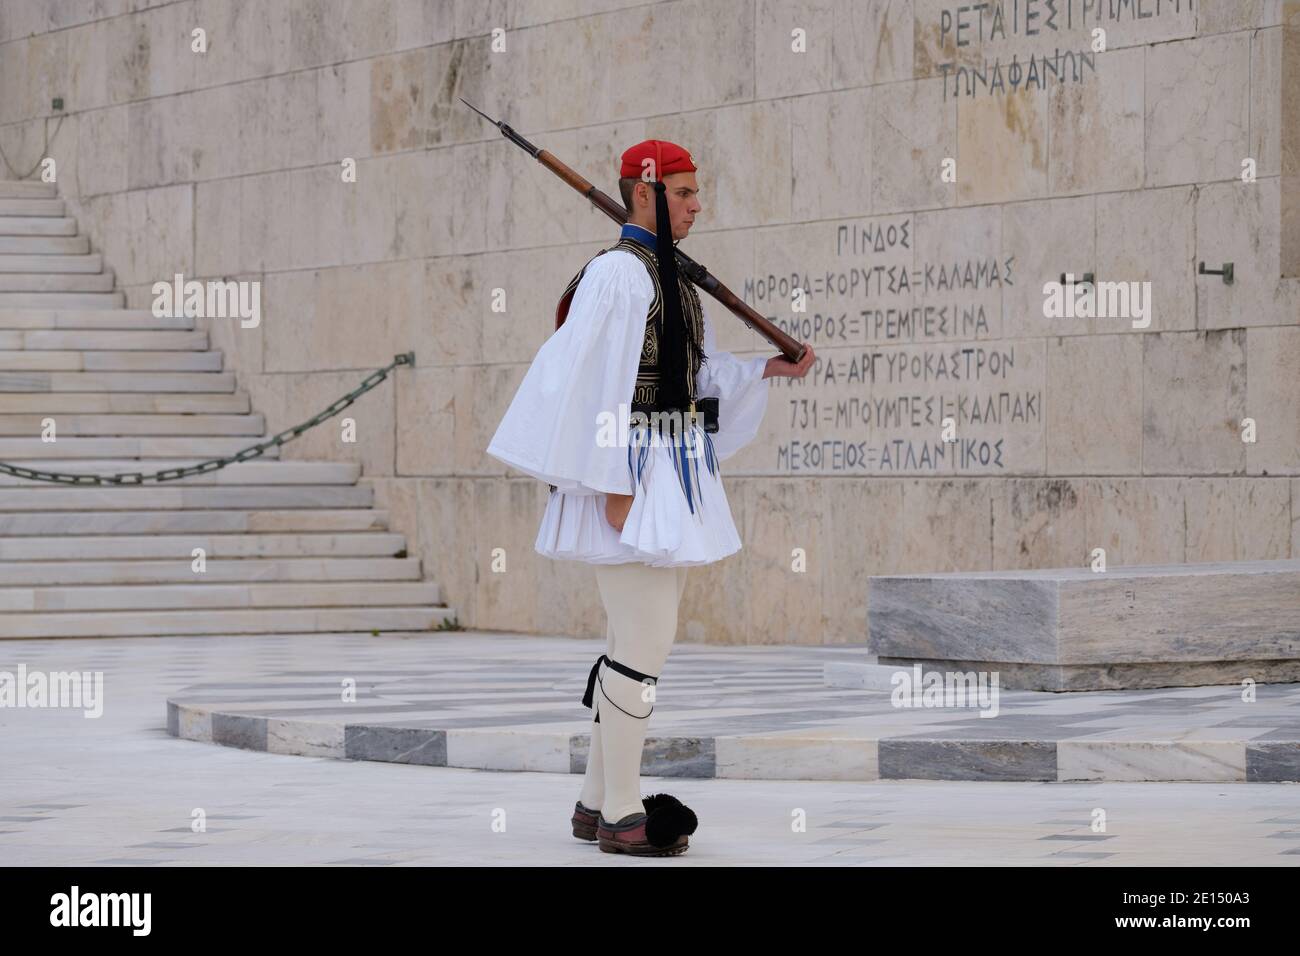 Atenas - 2019 de diciembre: Soldado griego tradicional en la plaza Syntagma Foto de stock